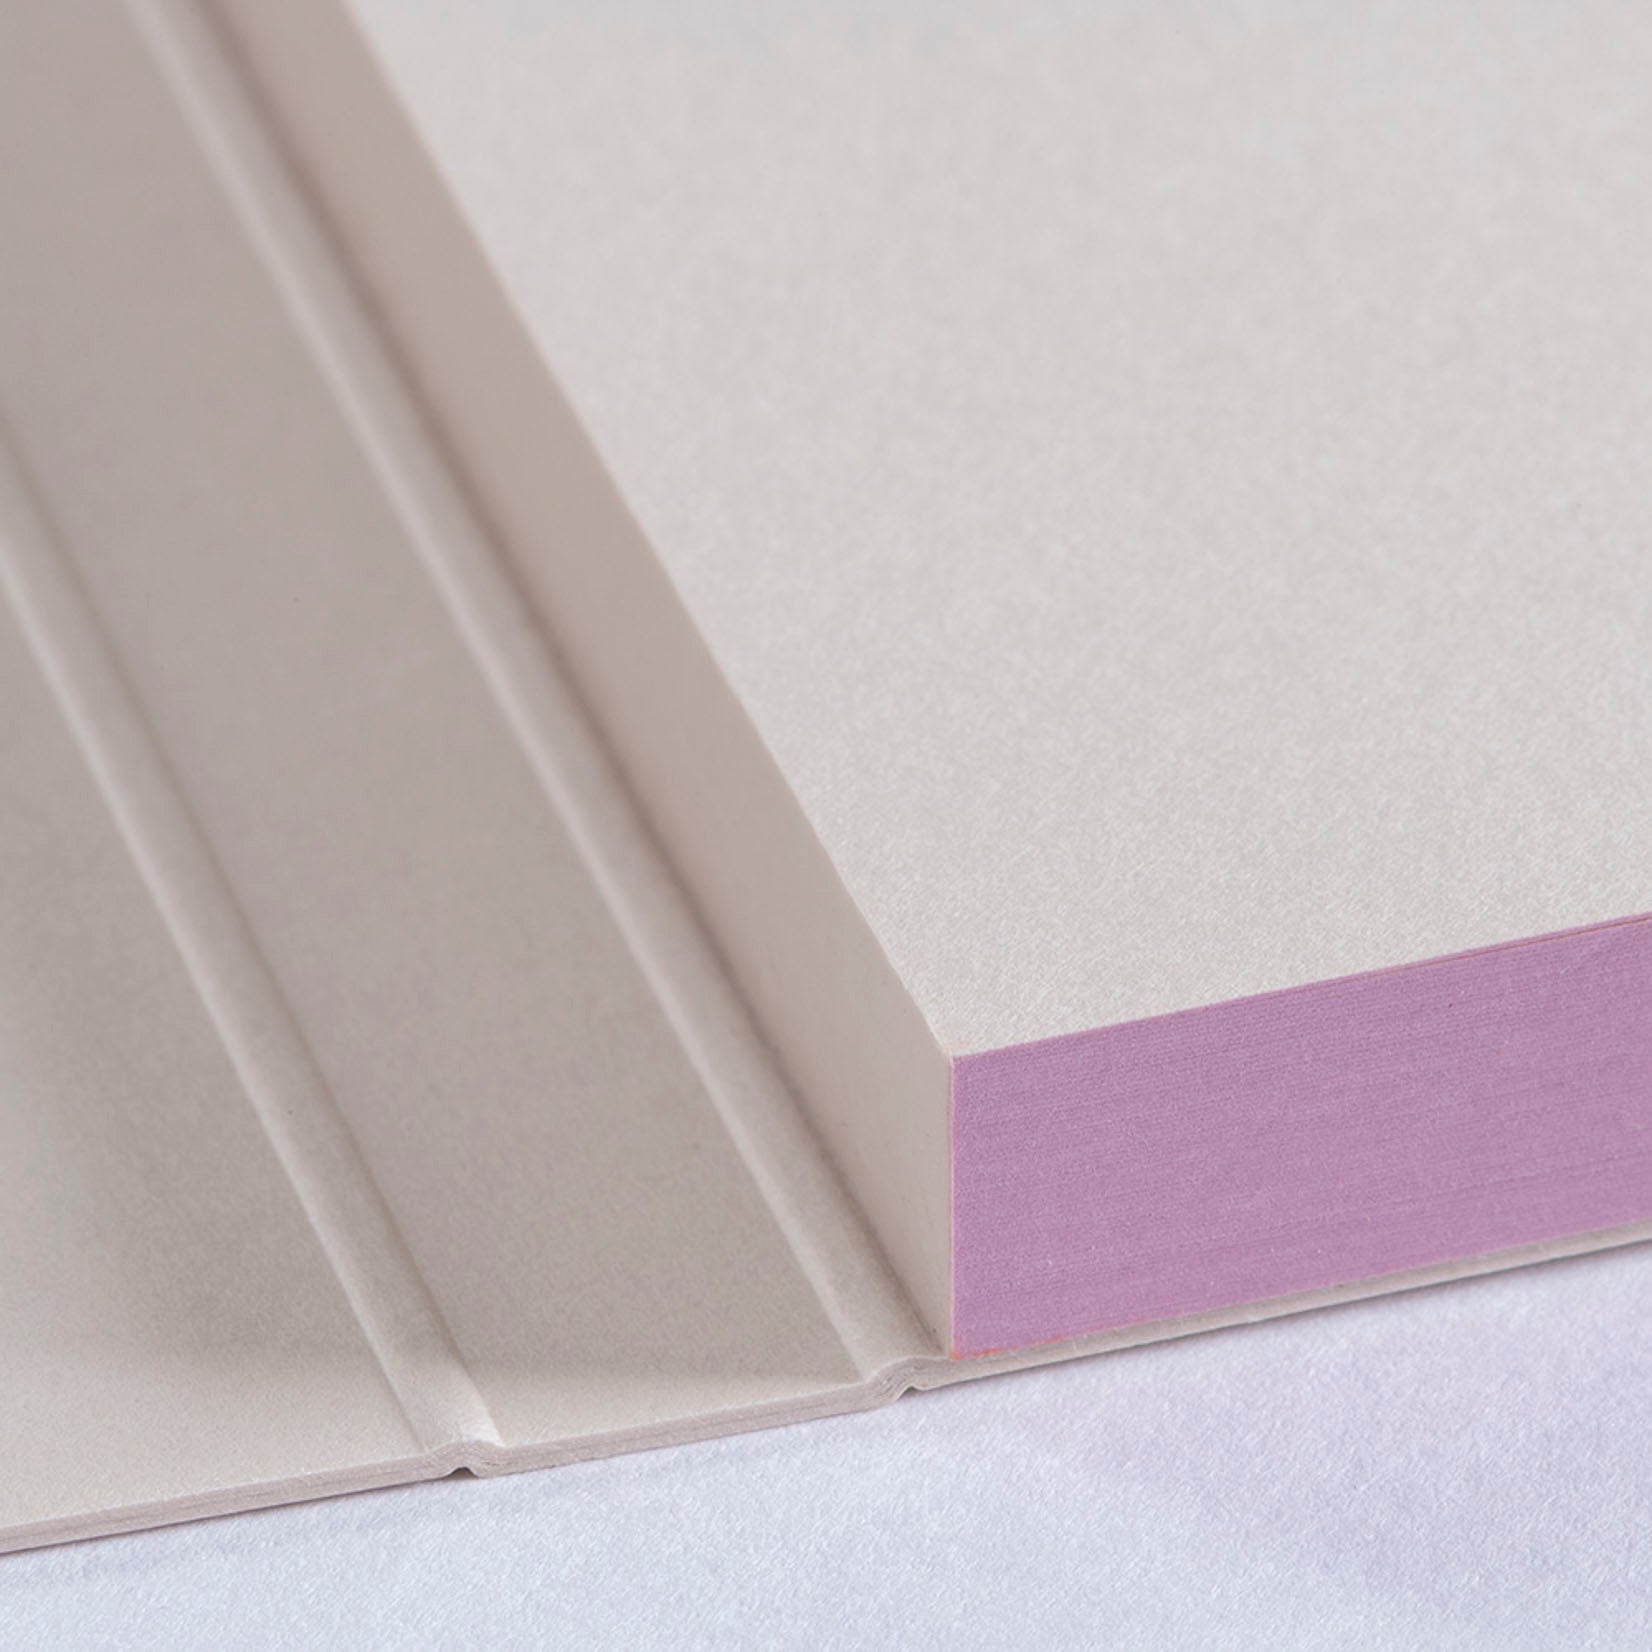 Gmund Büttenfabrik Büttenpapier Color edge Color blocking Notizblock 039760 lavendel lila